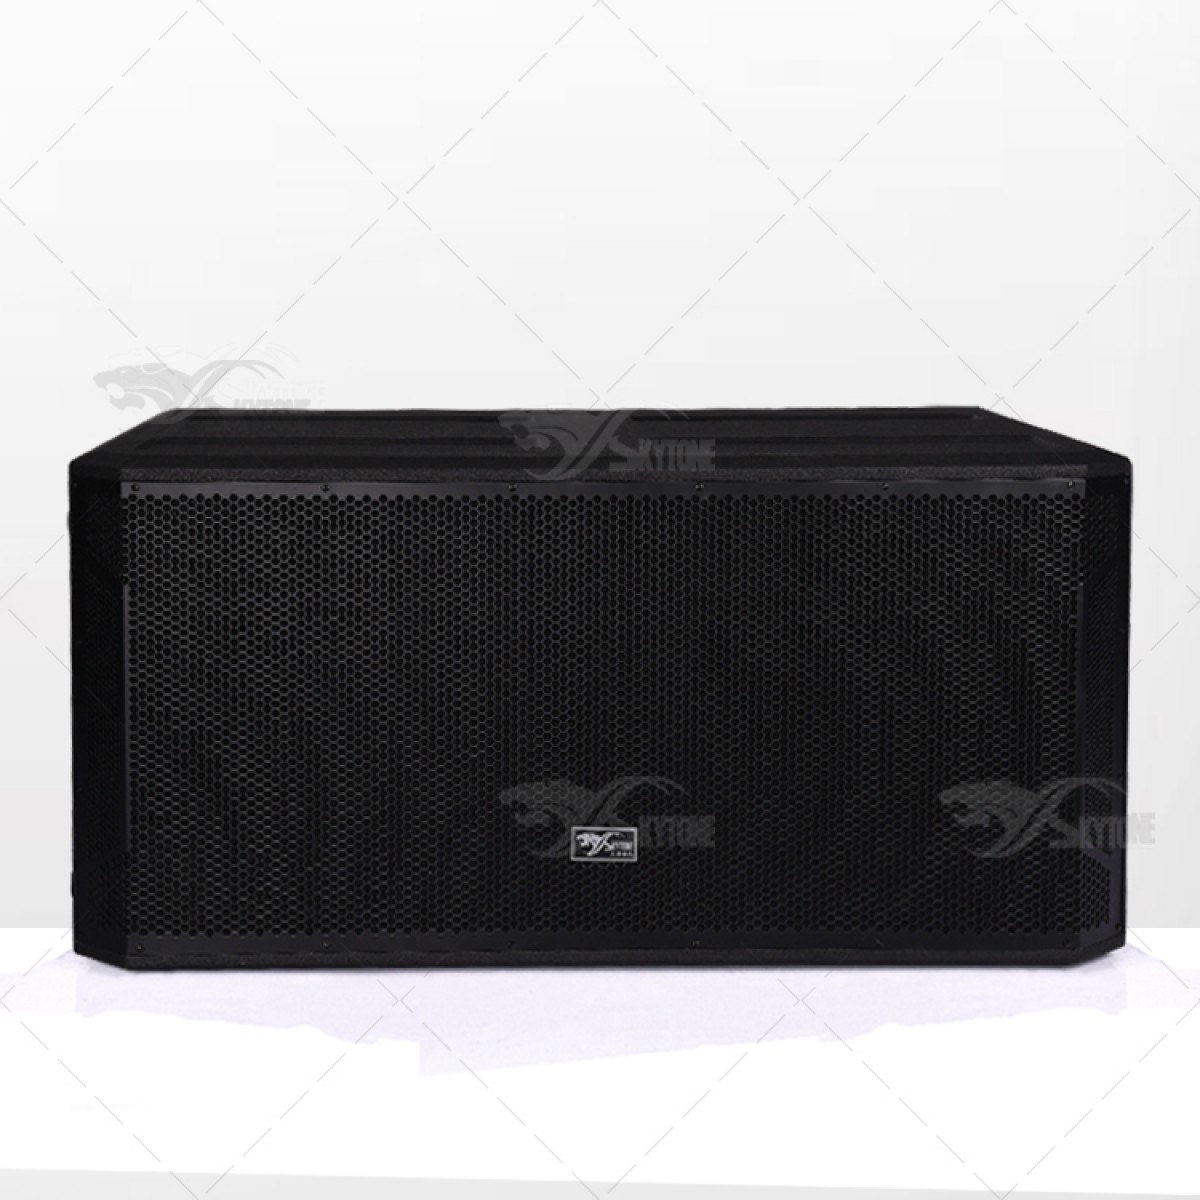 STX828S dual 18 inch 2000W subwoofer speaker, 18 inch bass bin